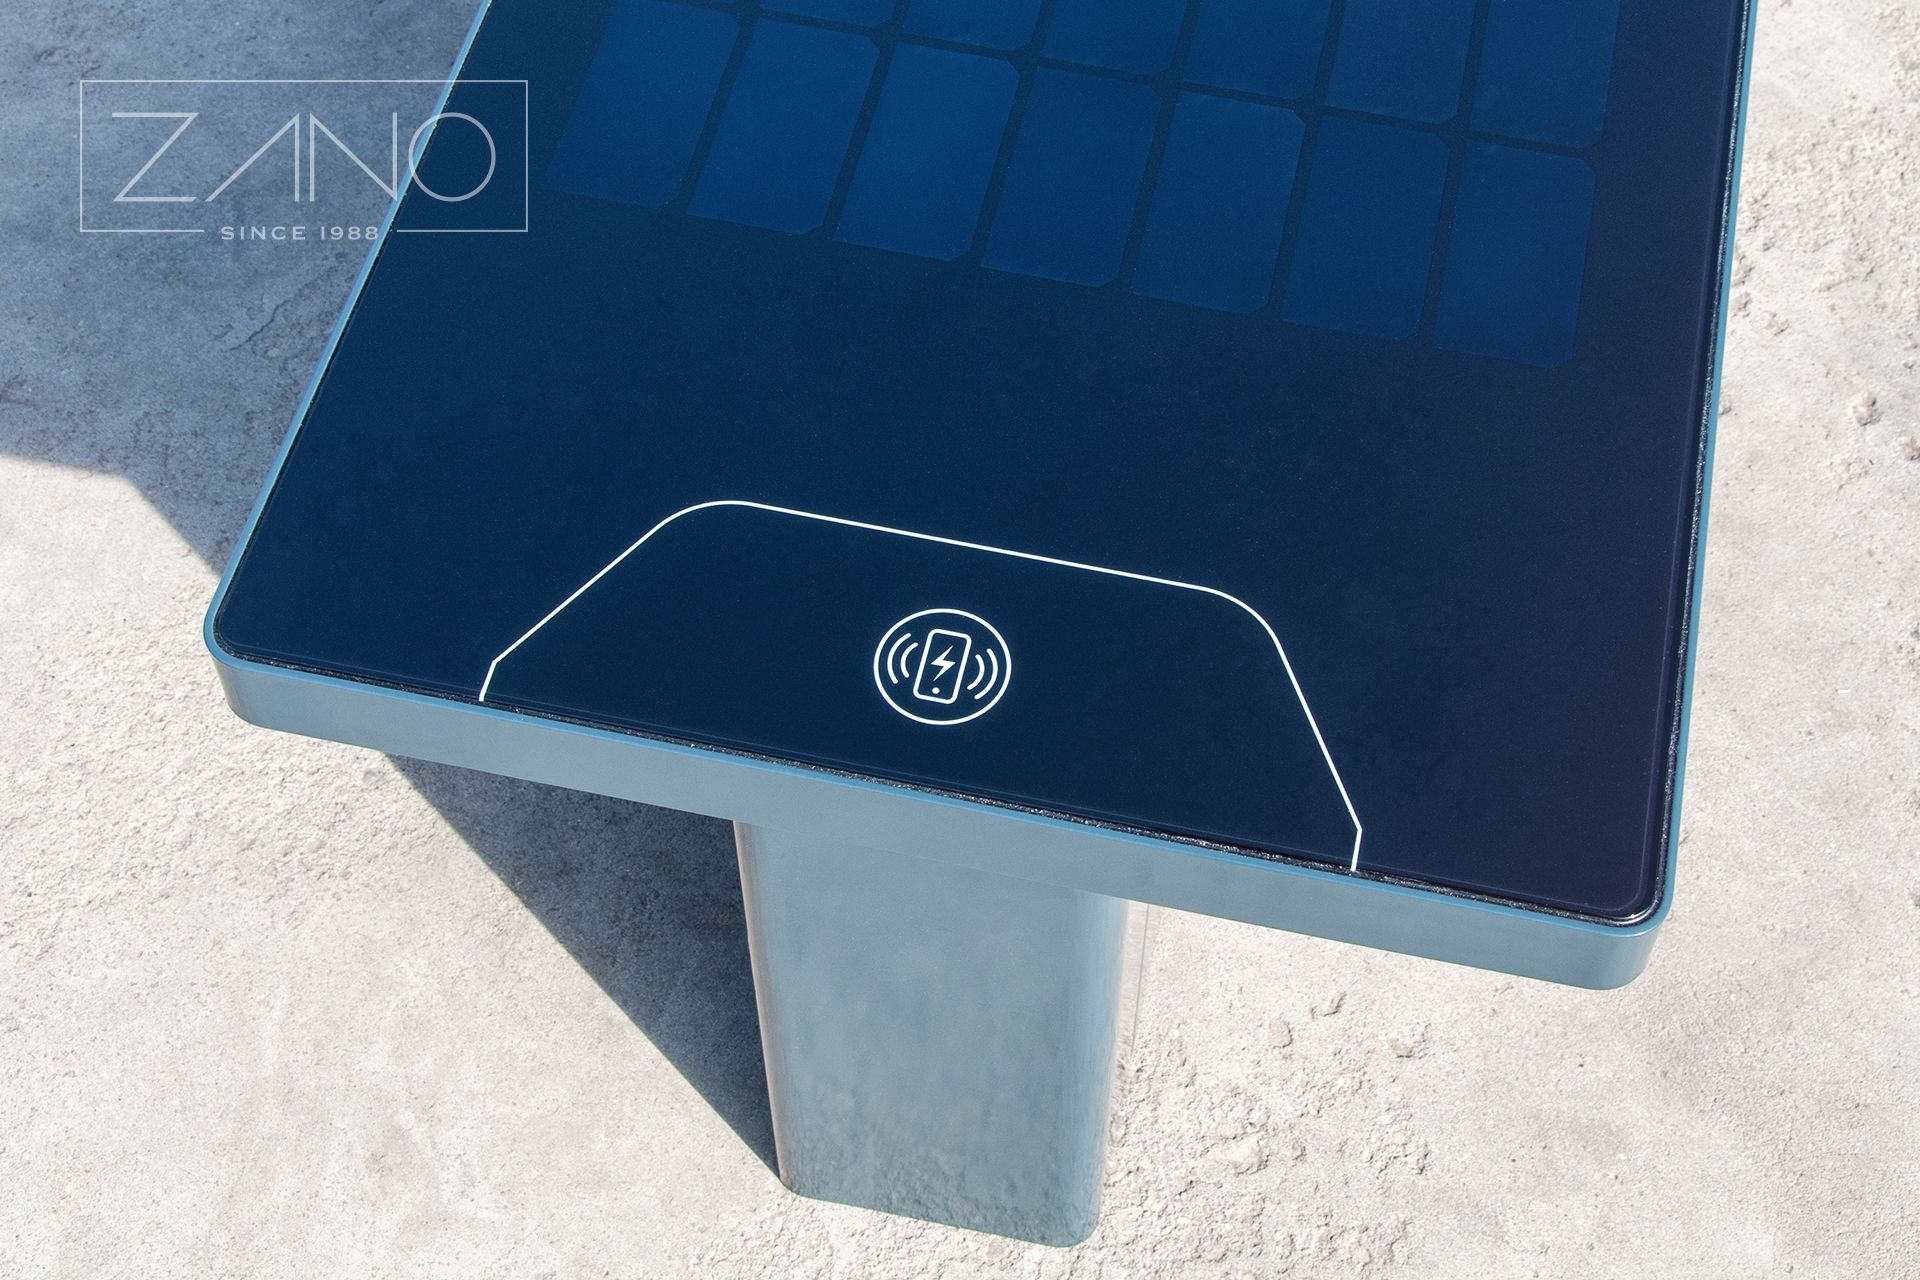 Caricabatterie a induzione per dispositivi mobili in una panchina solare